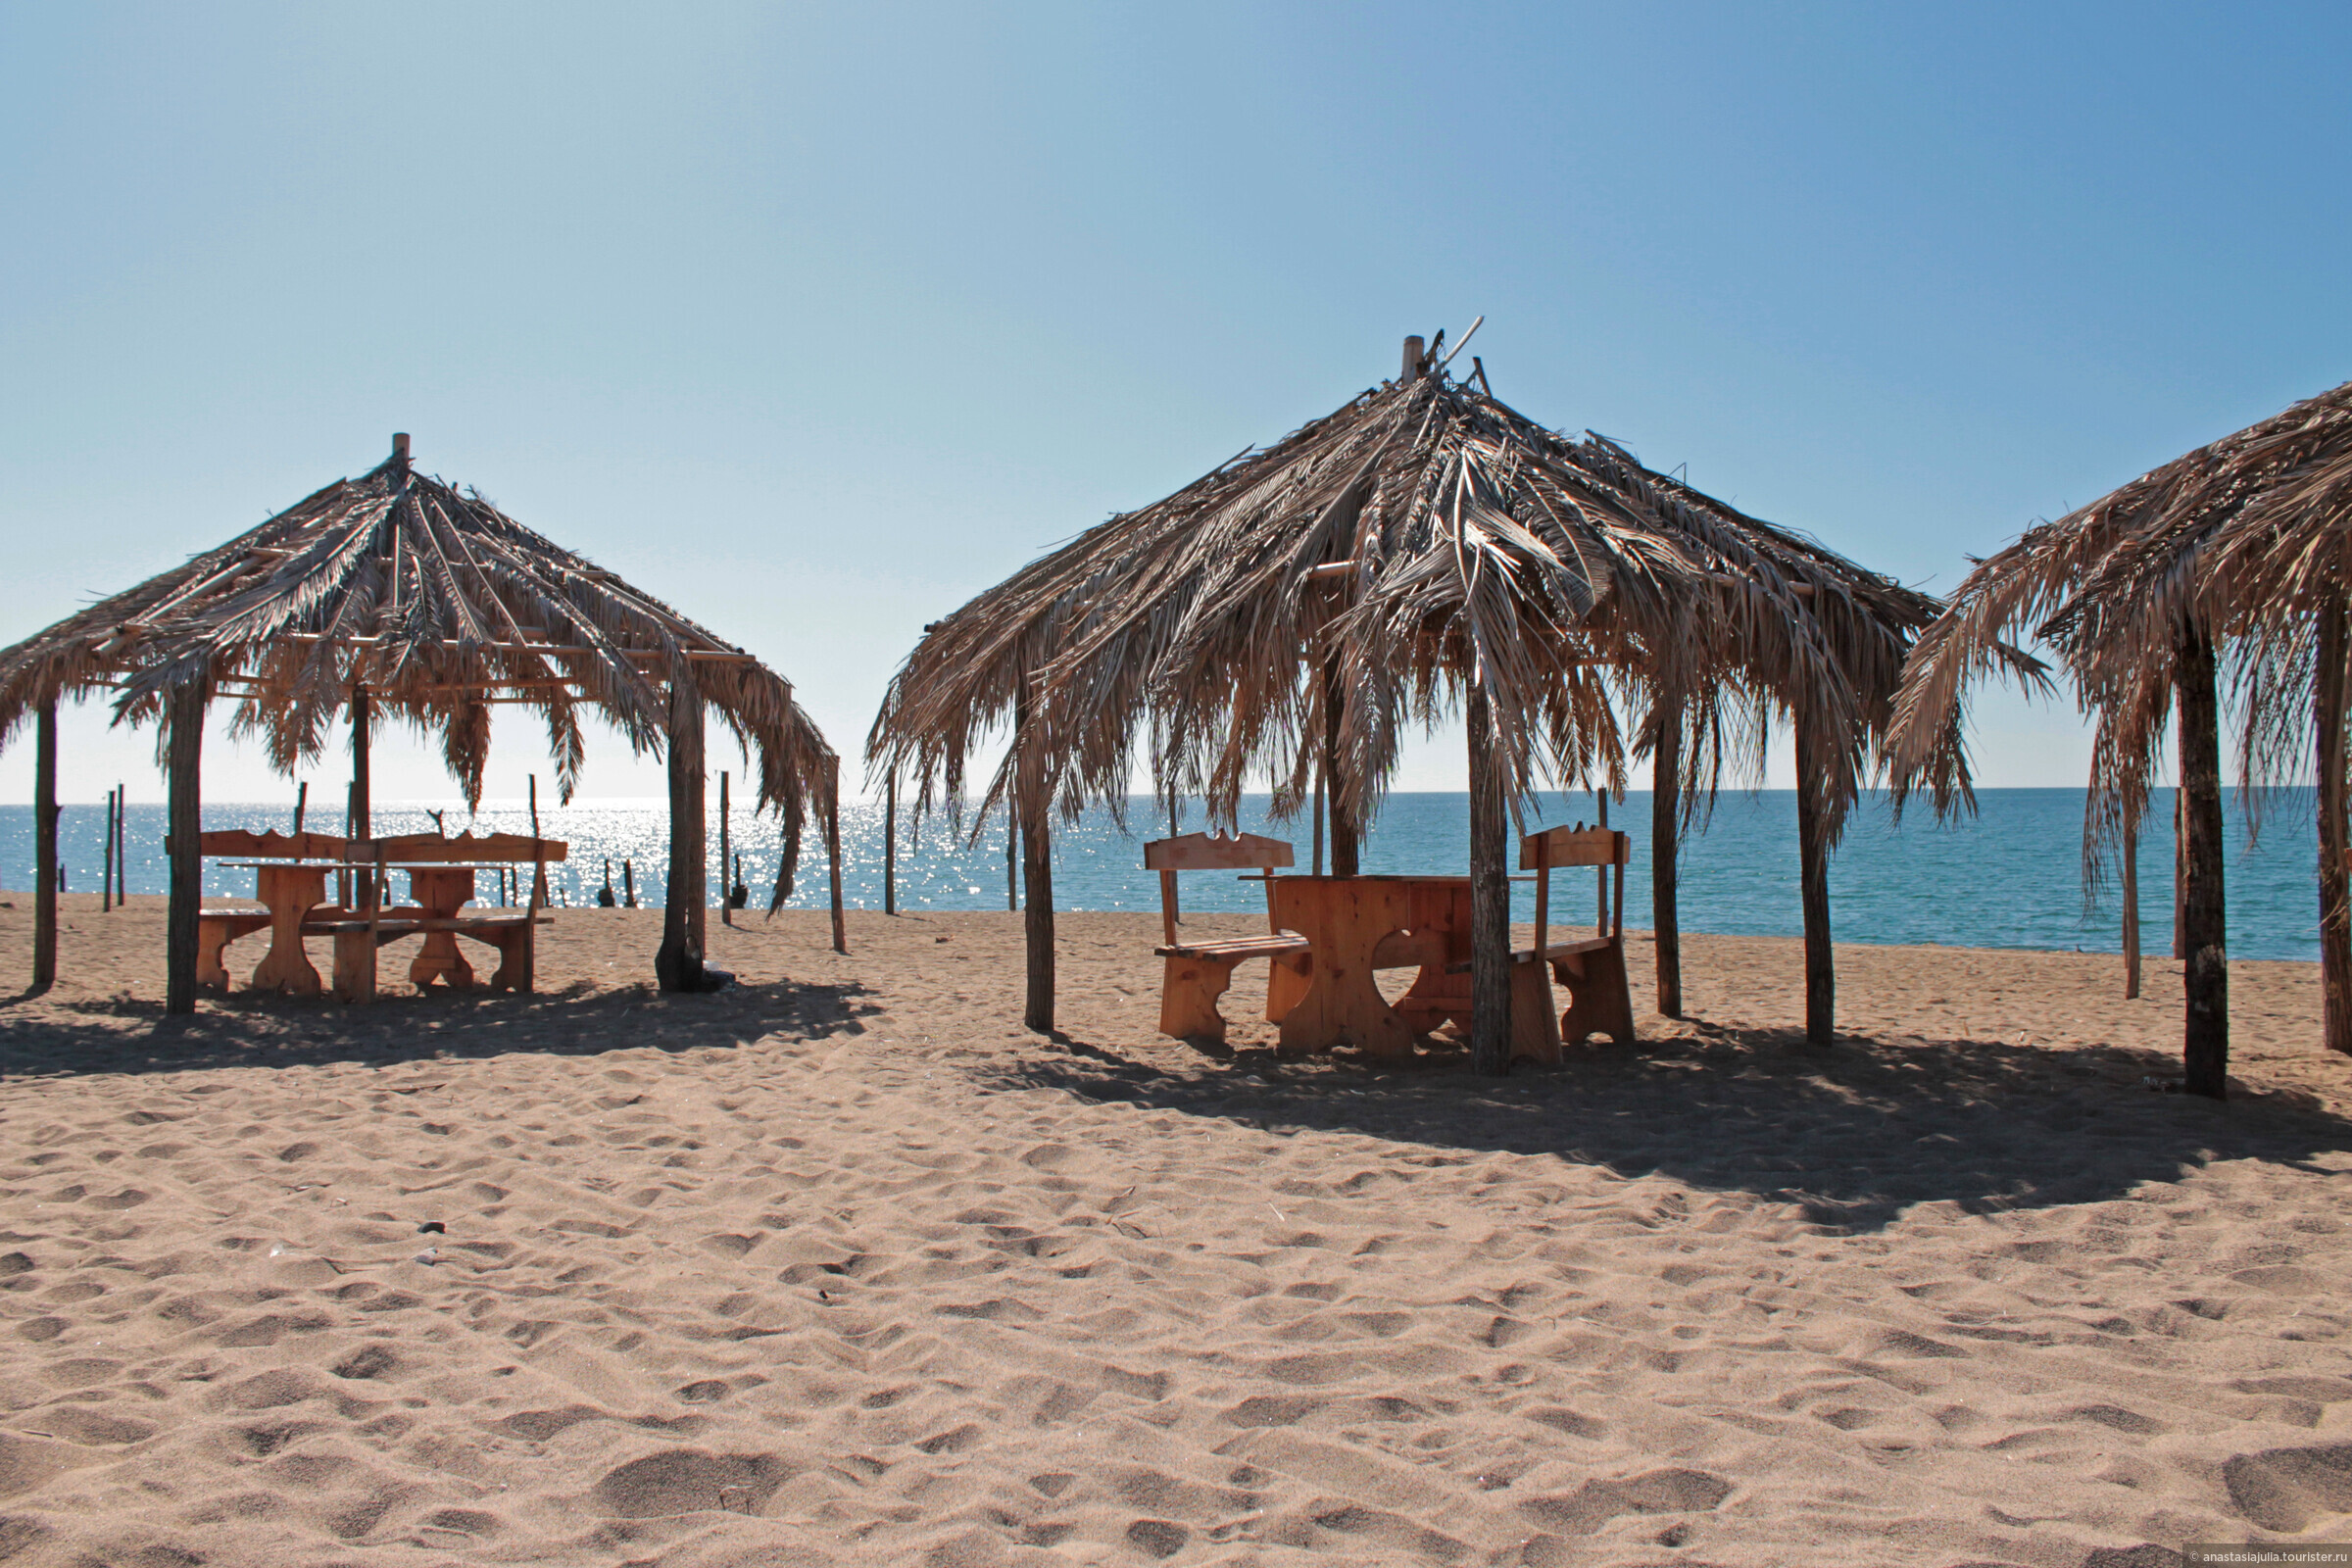 Синопский пляж, отзыв от AnastasiaJulia – "Песочный парадайз — "Мокко пляж" в Абхазии", Сухум, Абхазия, Октябрь 2019